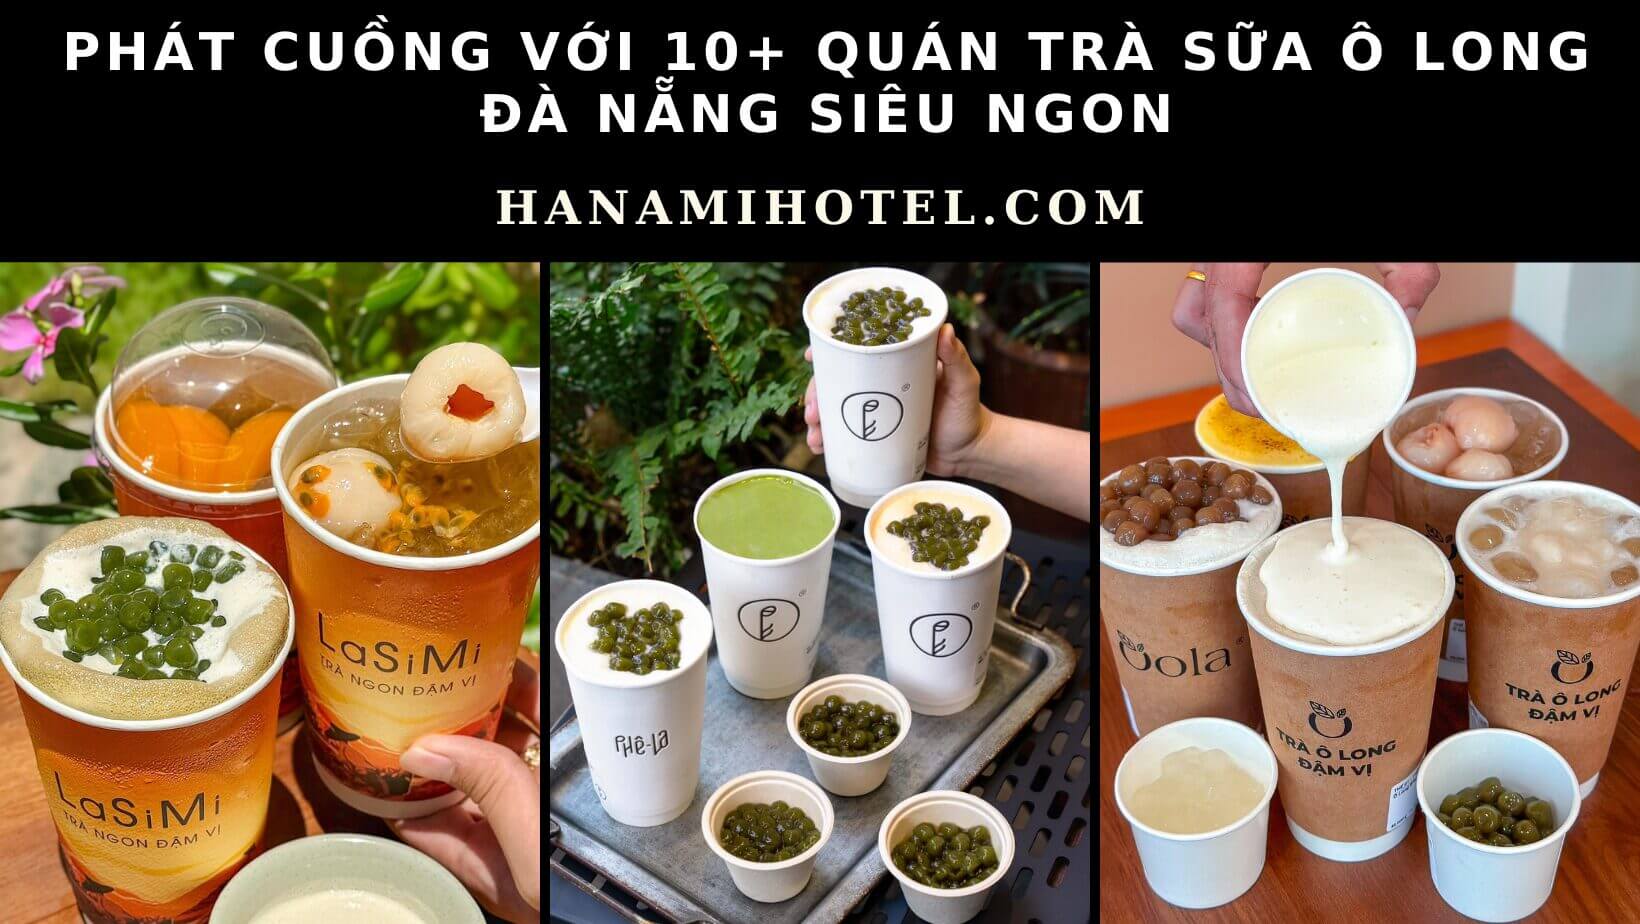 trà sữa ô long Đà Nẵng